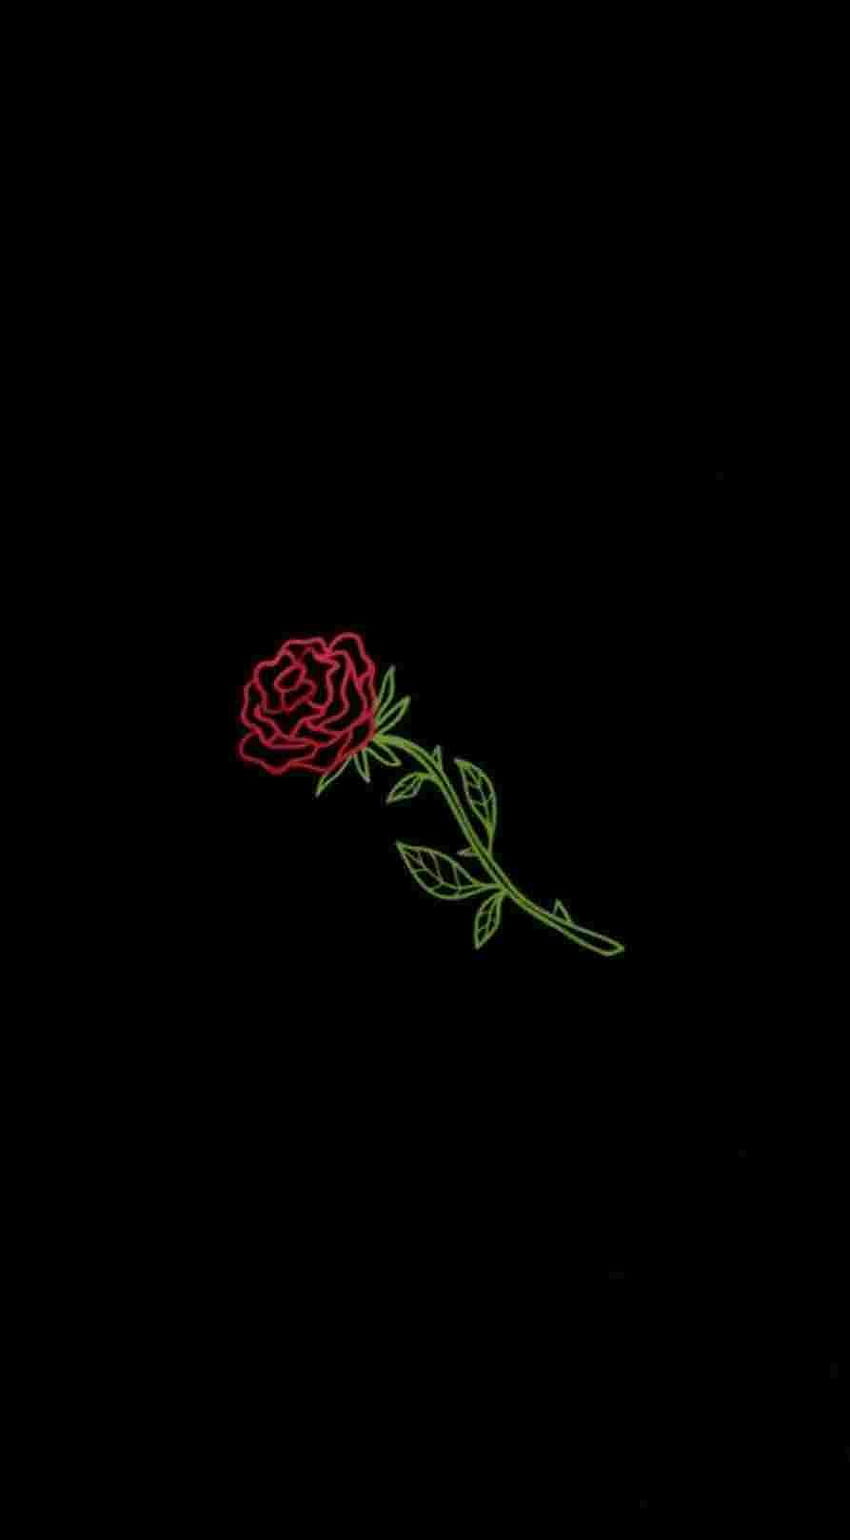 Aesthetic Rose on Dog, black aesthetic flowers HD phone wallpaper | Pxfuel